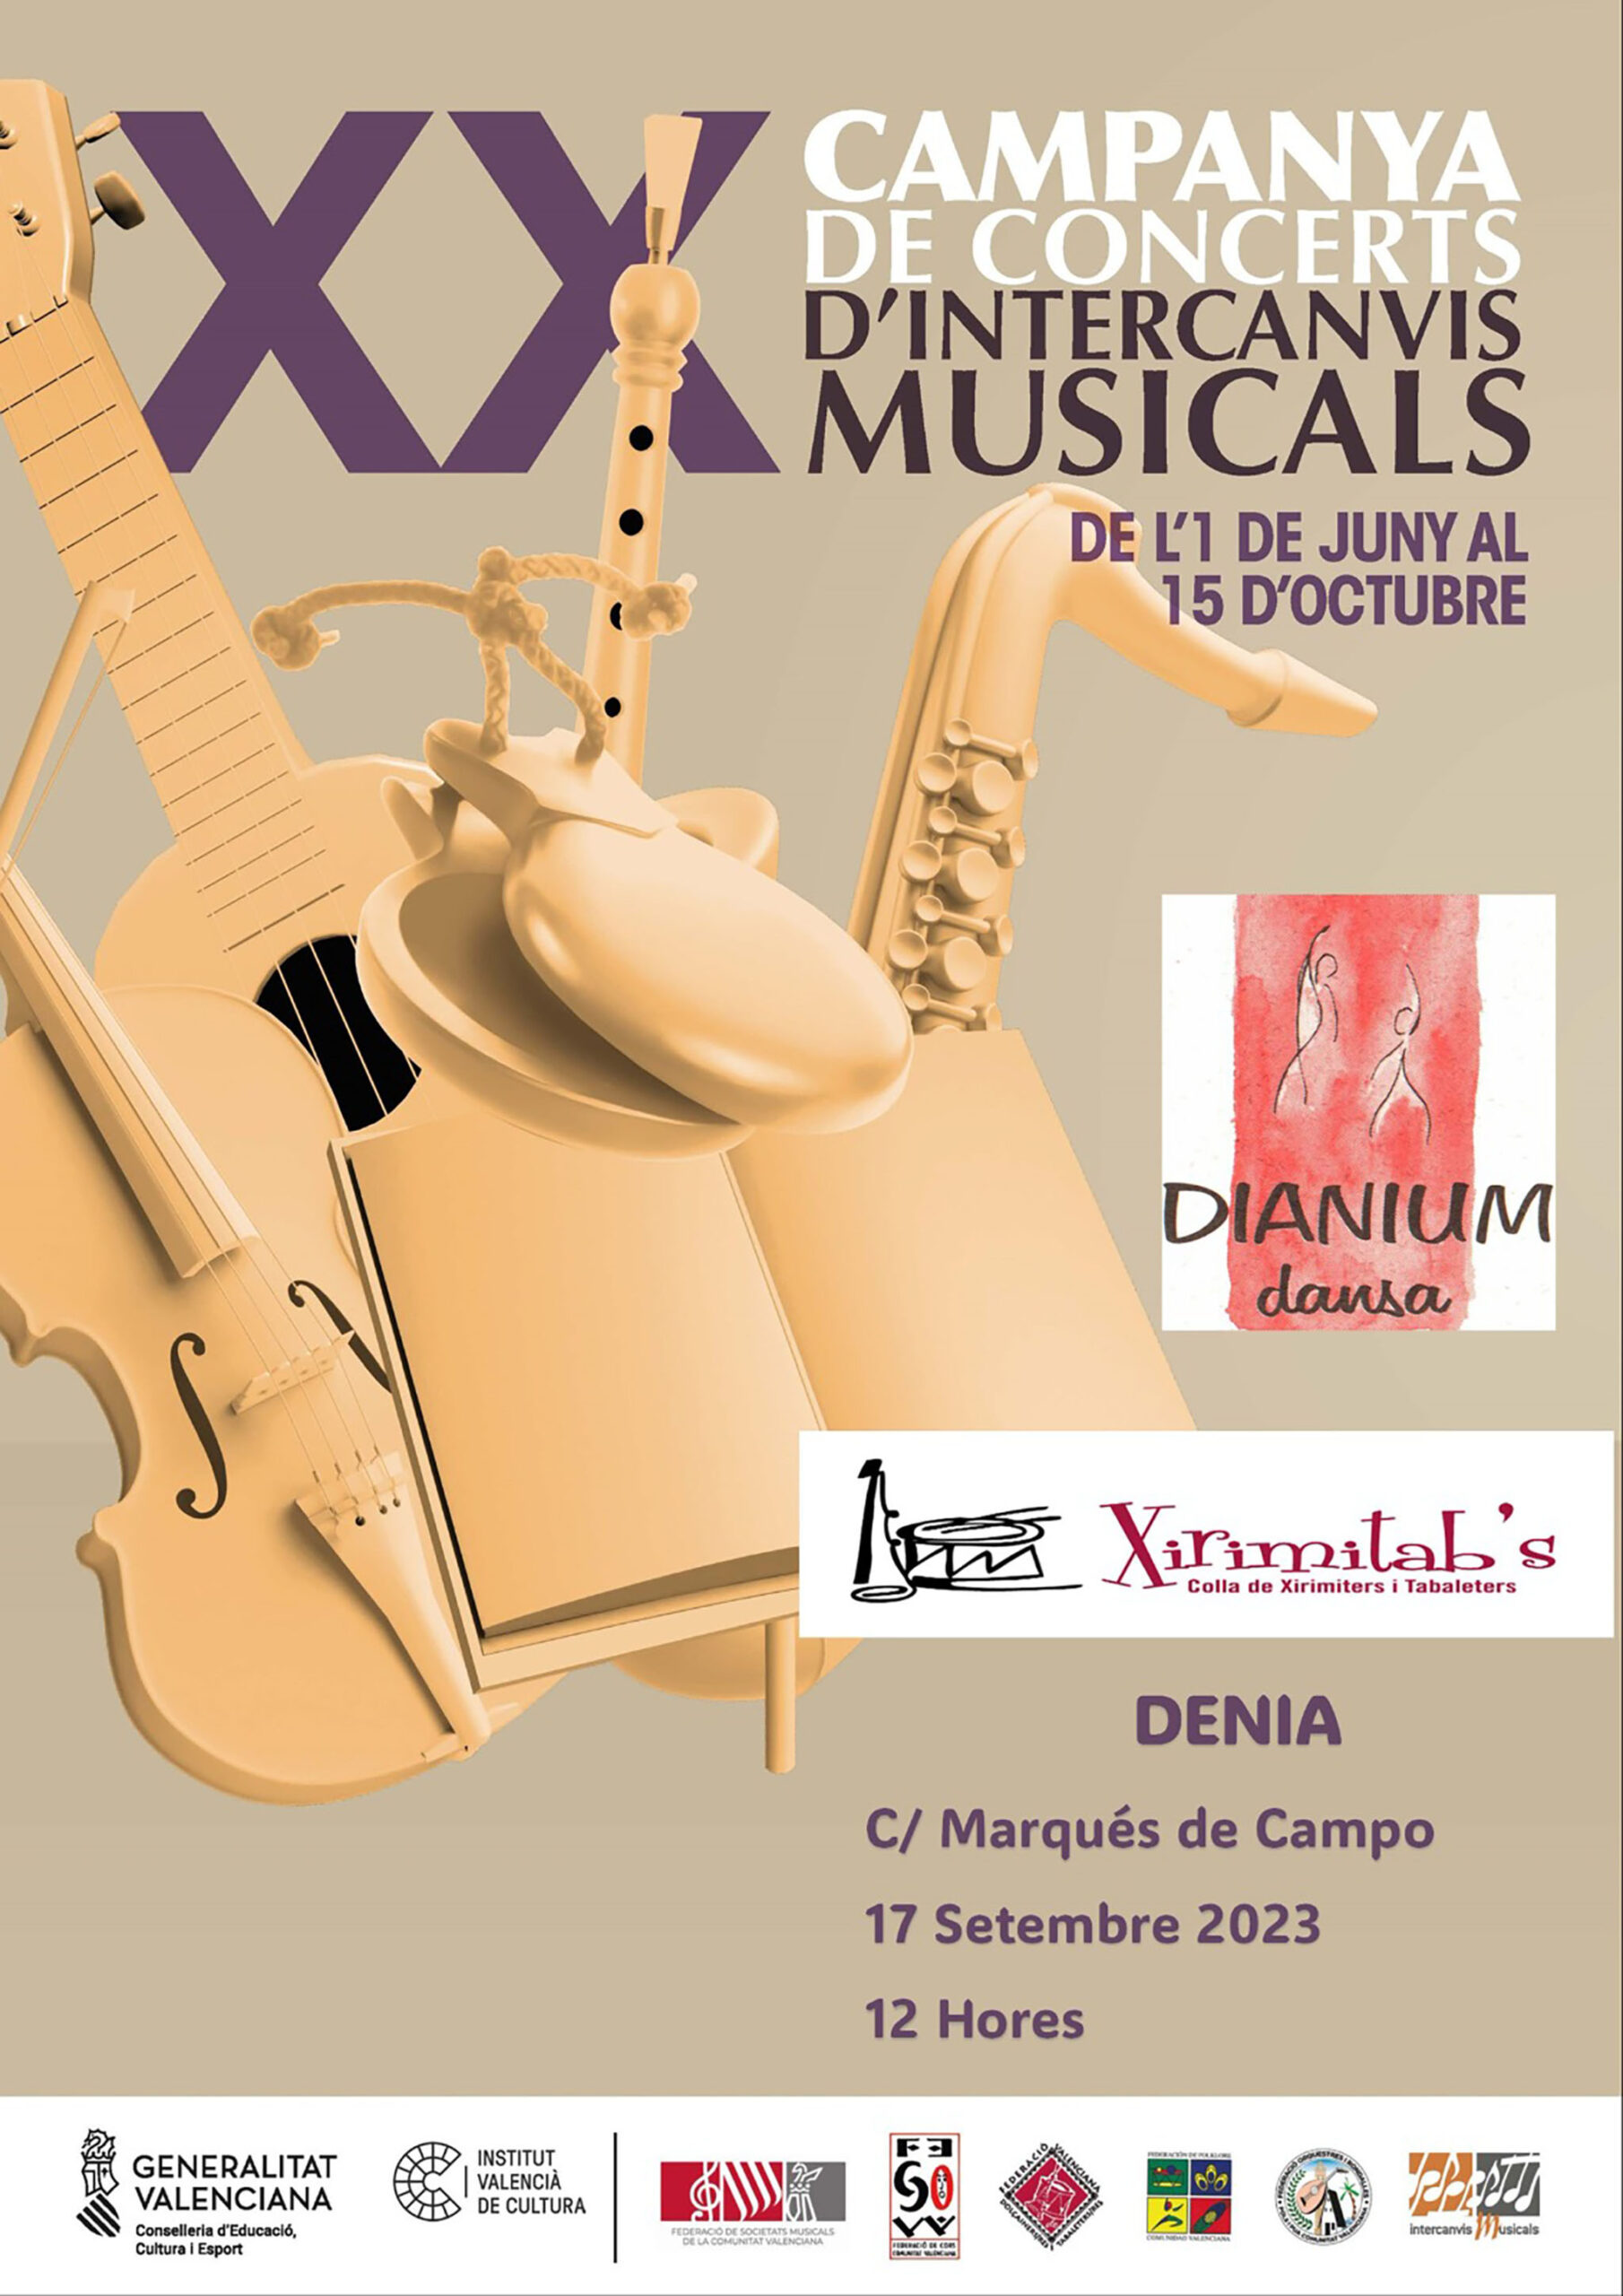 Cartel de la Campanya d’Intercanvis Musicals en Dénia